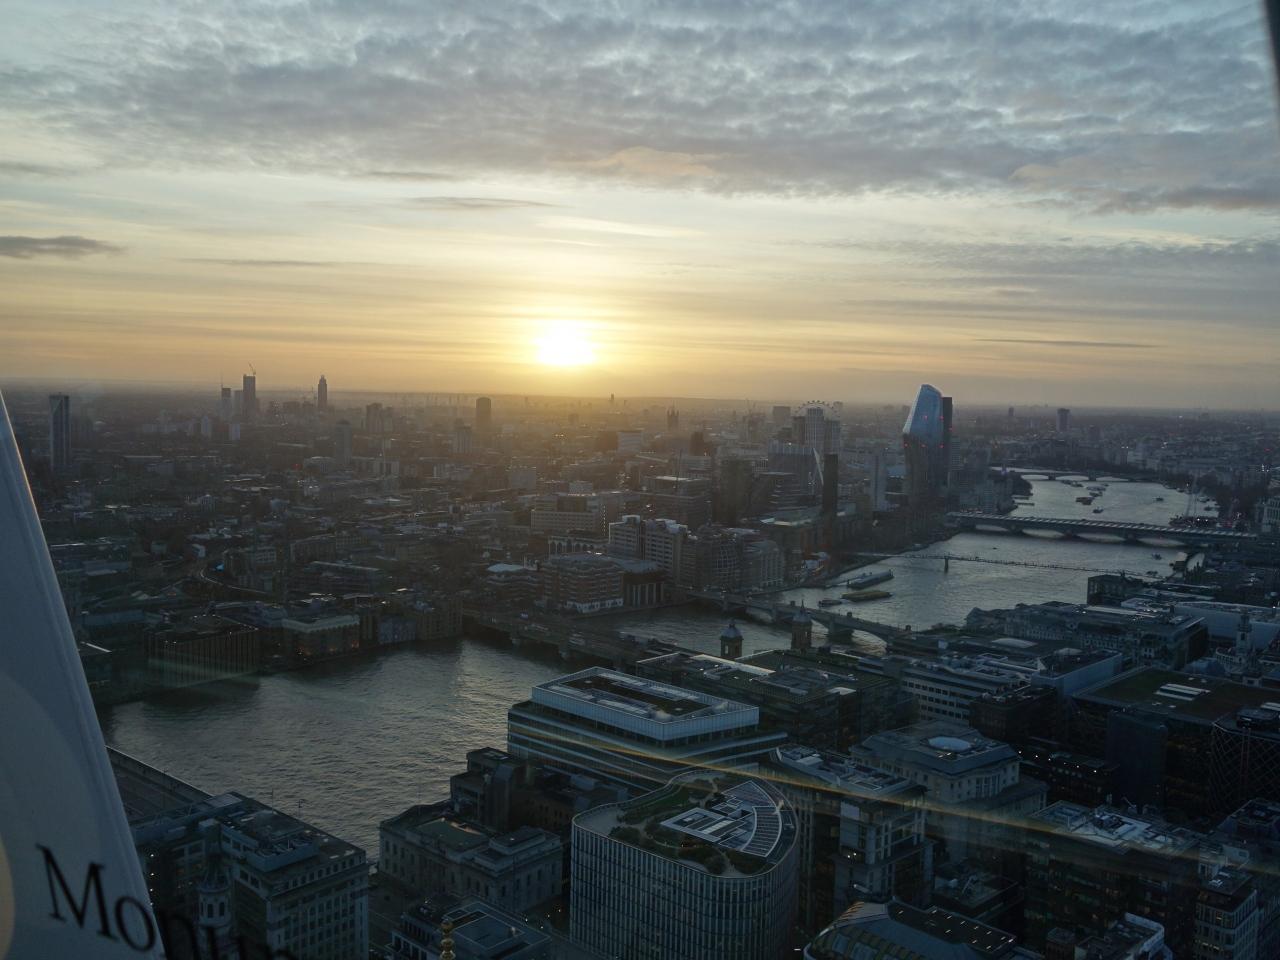 London 1 9 Sky Garden で夕日を見る そして ライトアップのはじまるロンドンを見下す ロンドン イギリス の旅行記 ブログ By Nomonomoさん フォートラベル